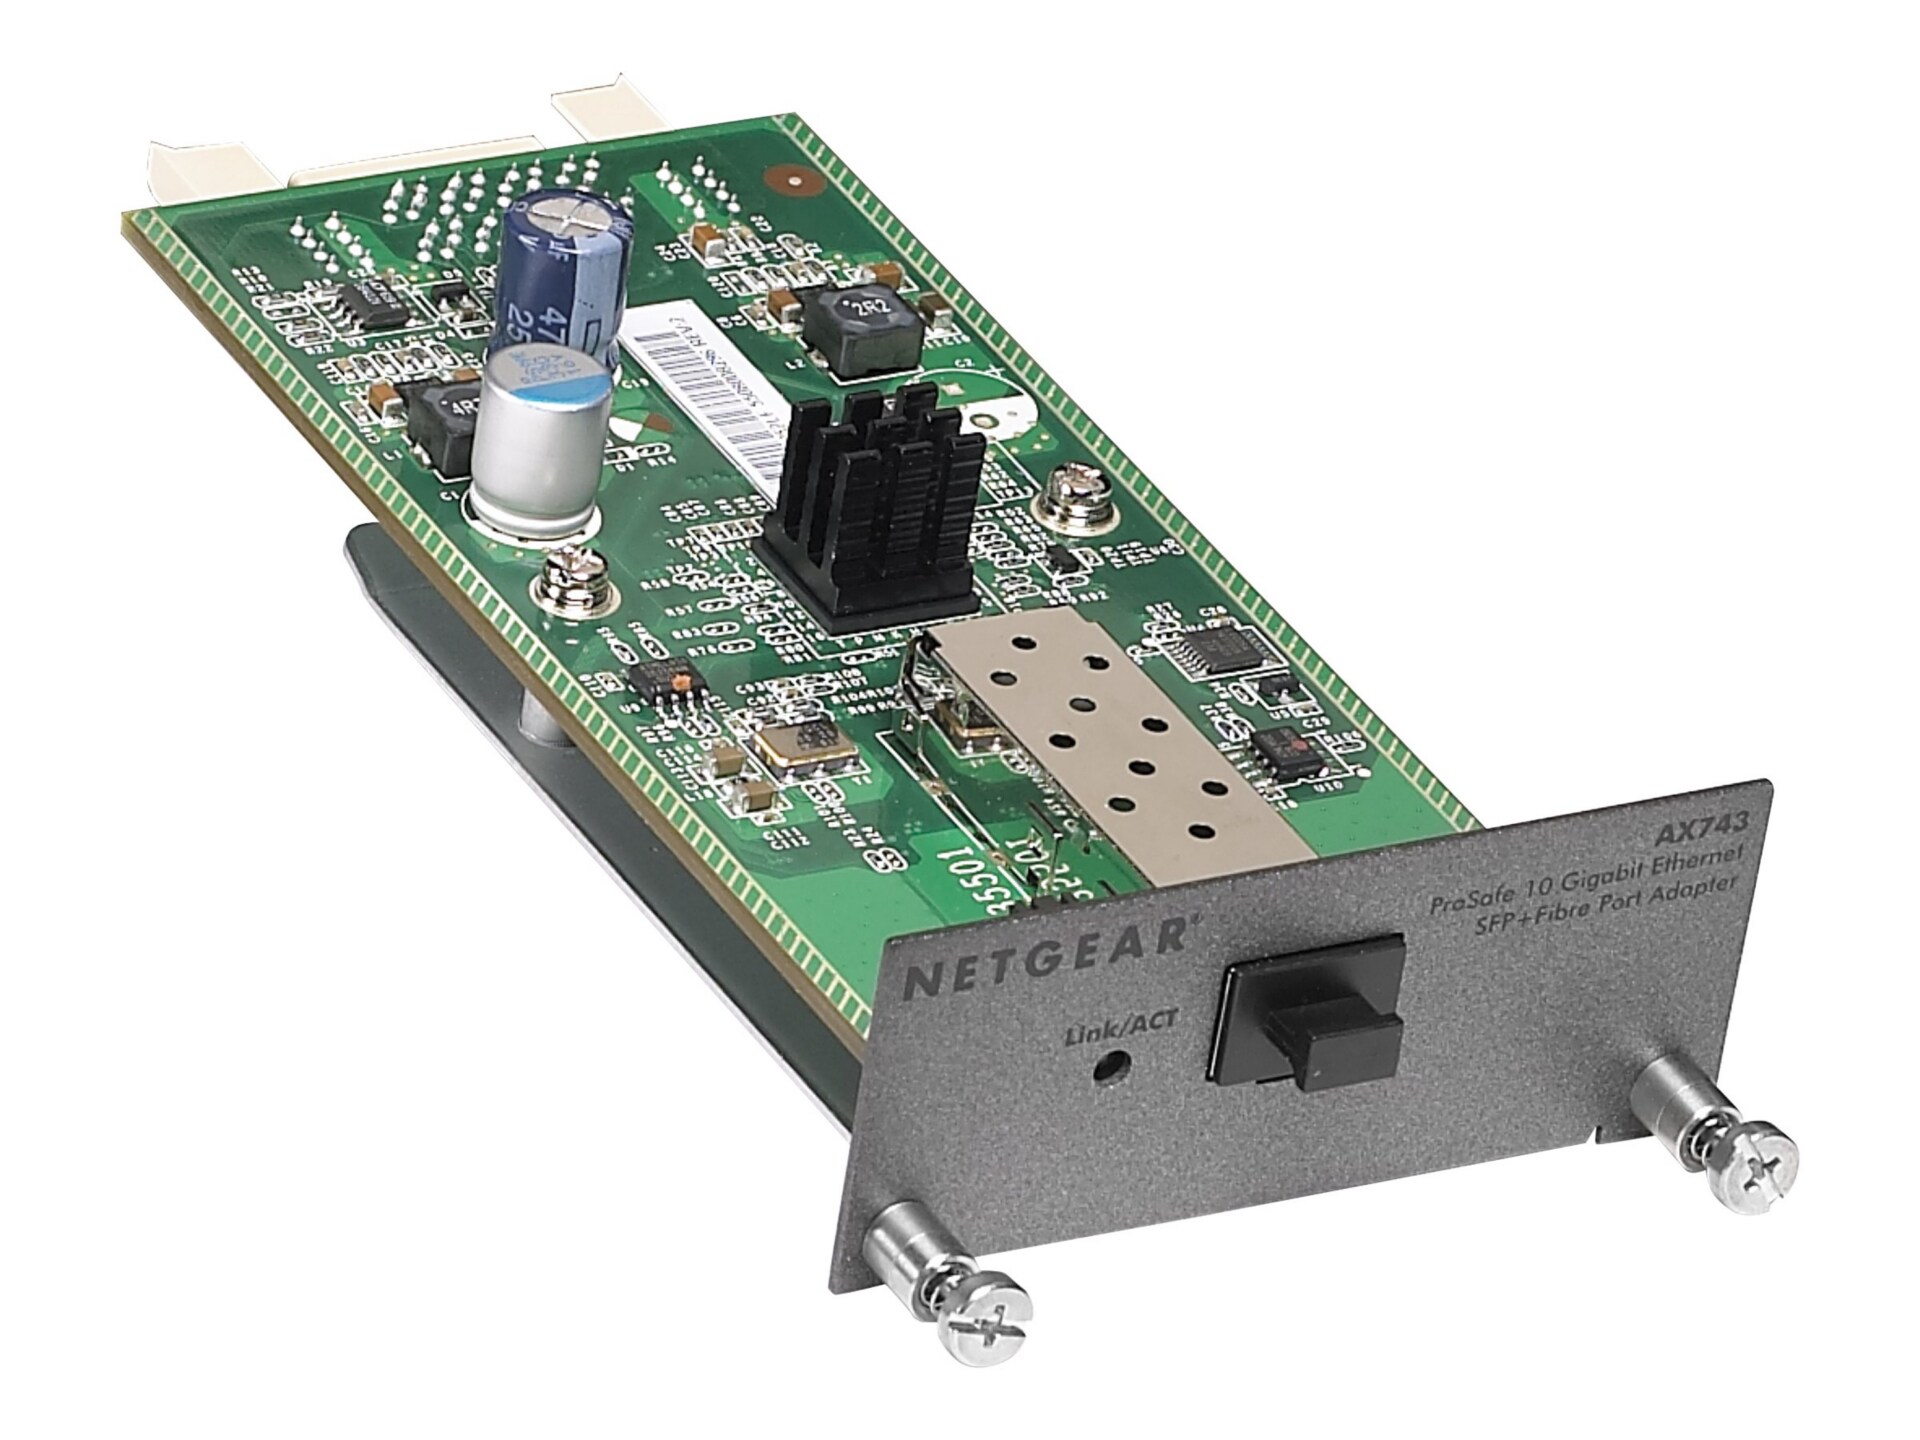 NETGEAR 10 Gigabit Adapter Module M5300 Series, SFP+ (AX743)